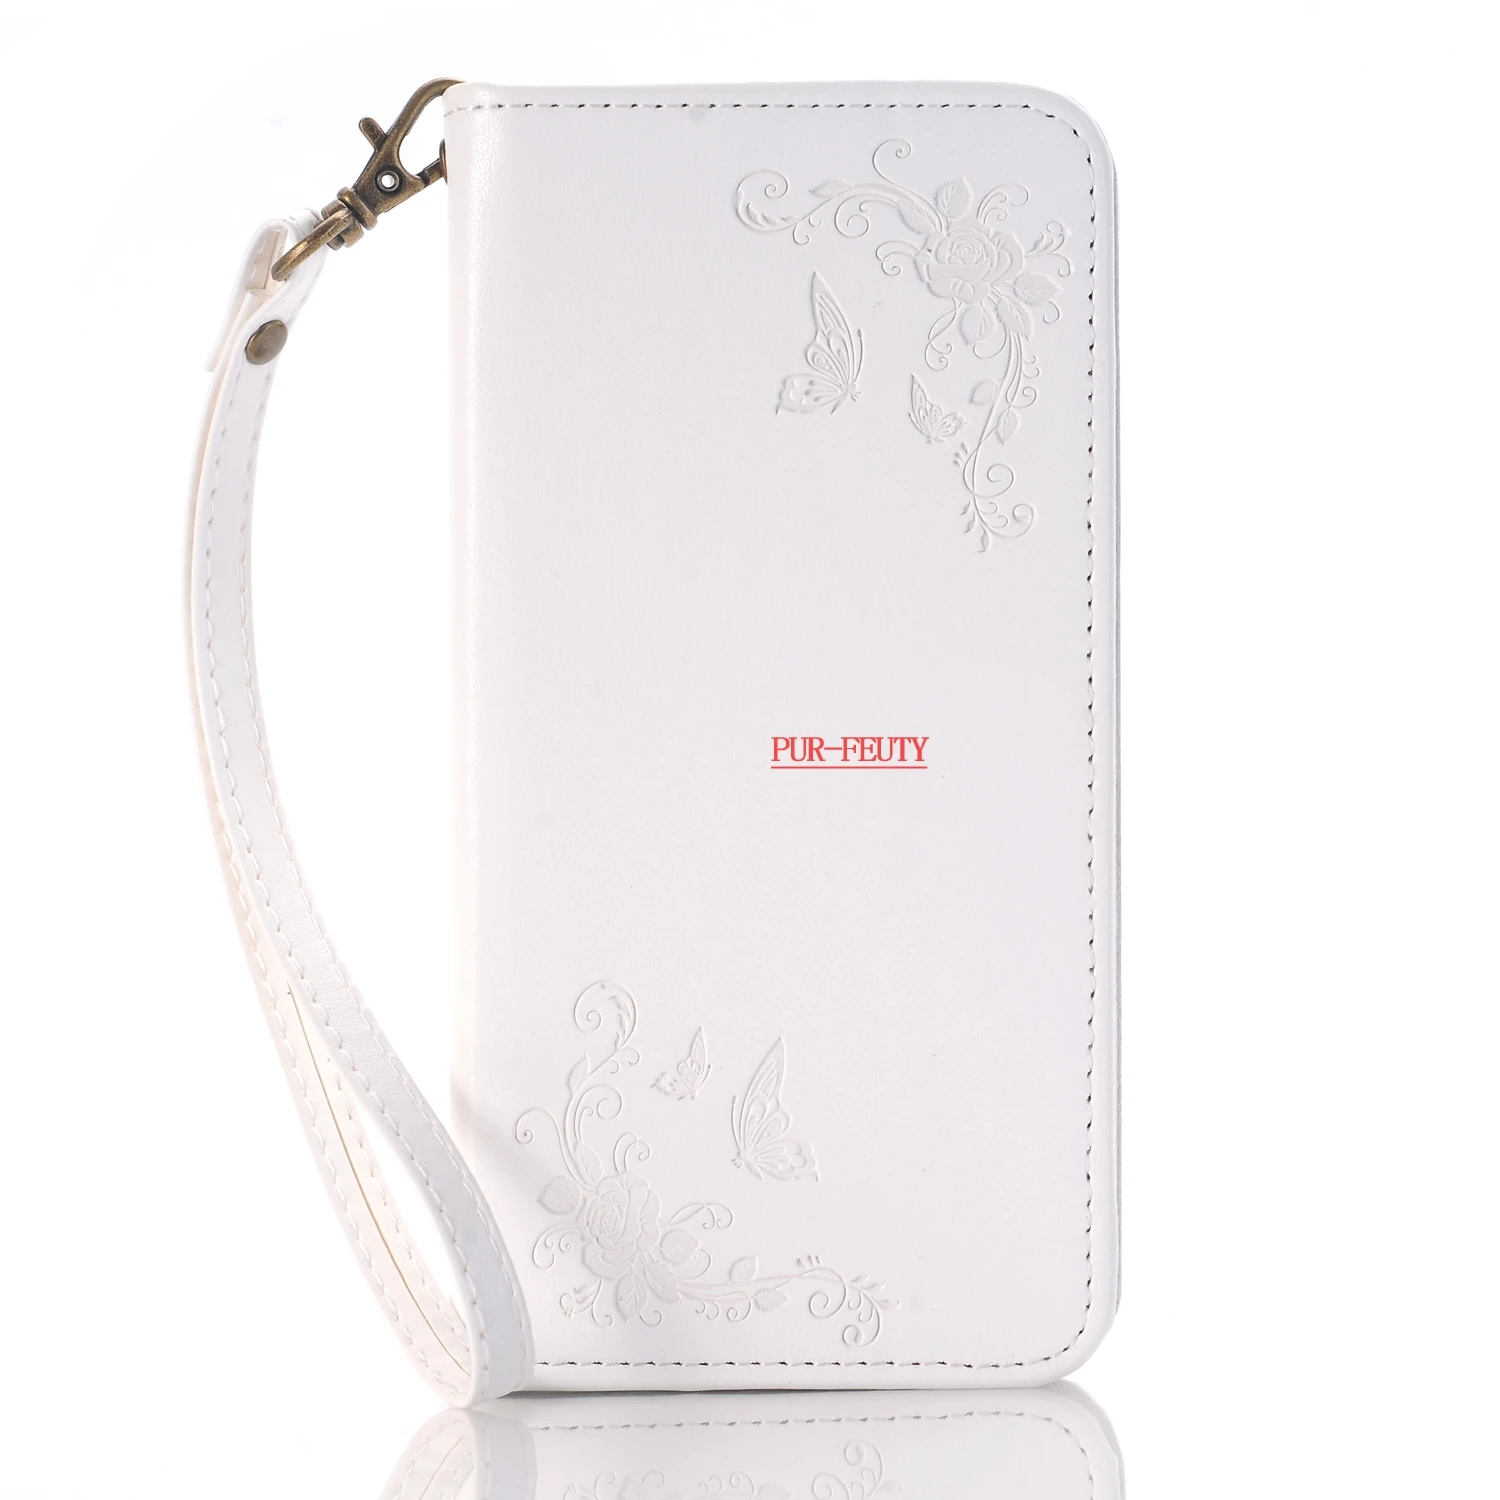 Роскошный чехол для телефона для samsung Galaxy S3 Neo S 3 Duos i9300i GT-i9300 GT-i9301 GT-i9300i i9305 GT-i9305 кожаный чехол с откидной крышкой - Цвет: White